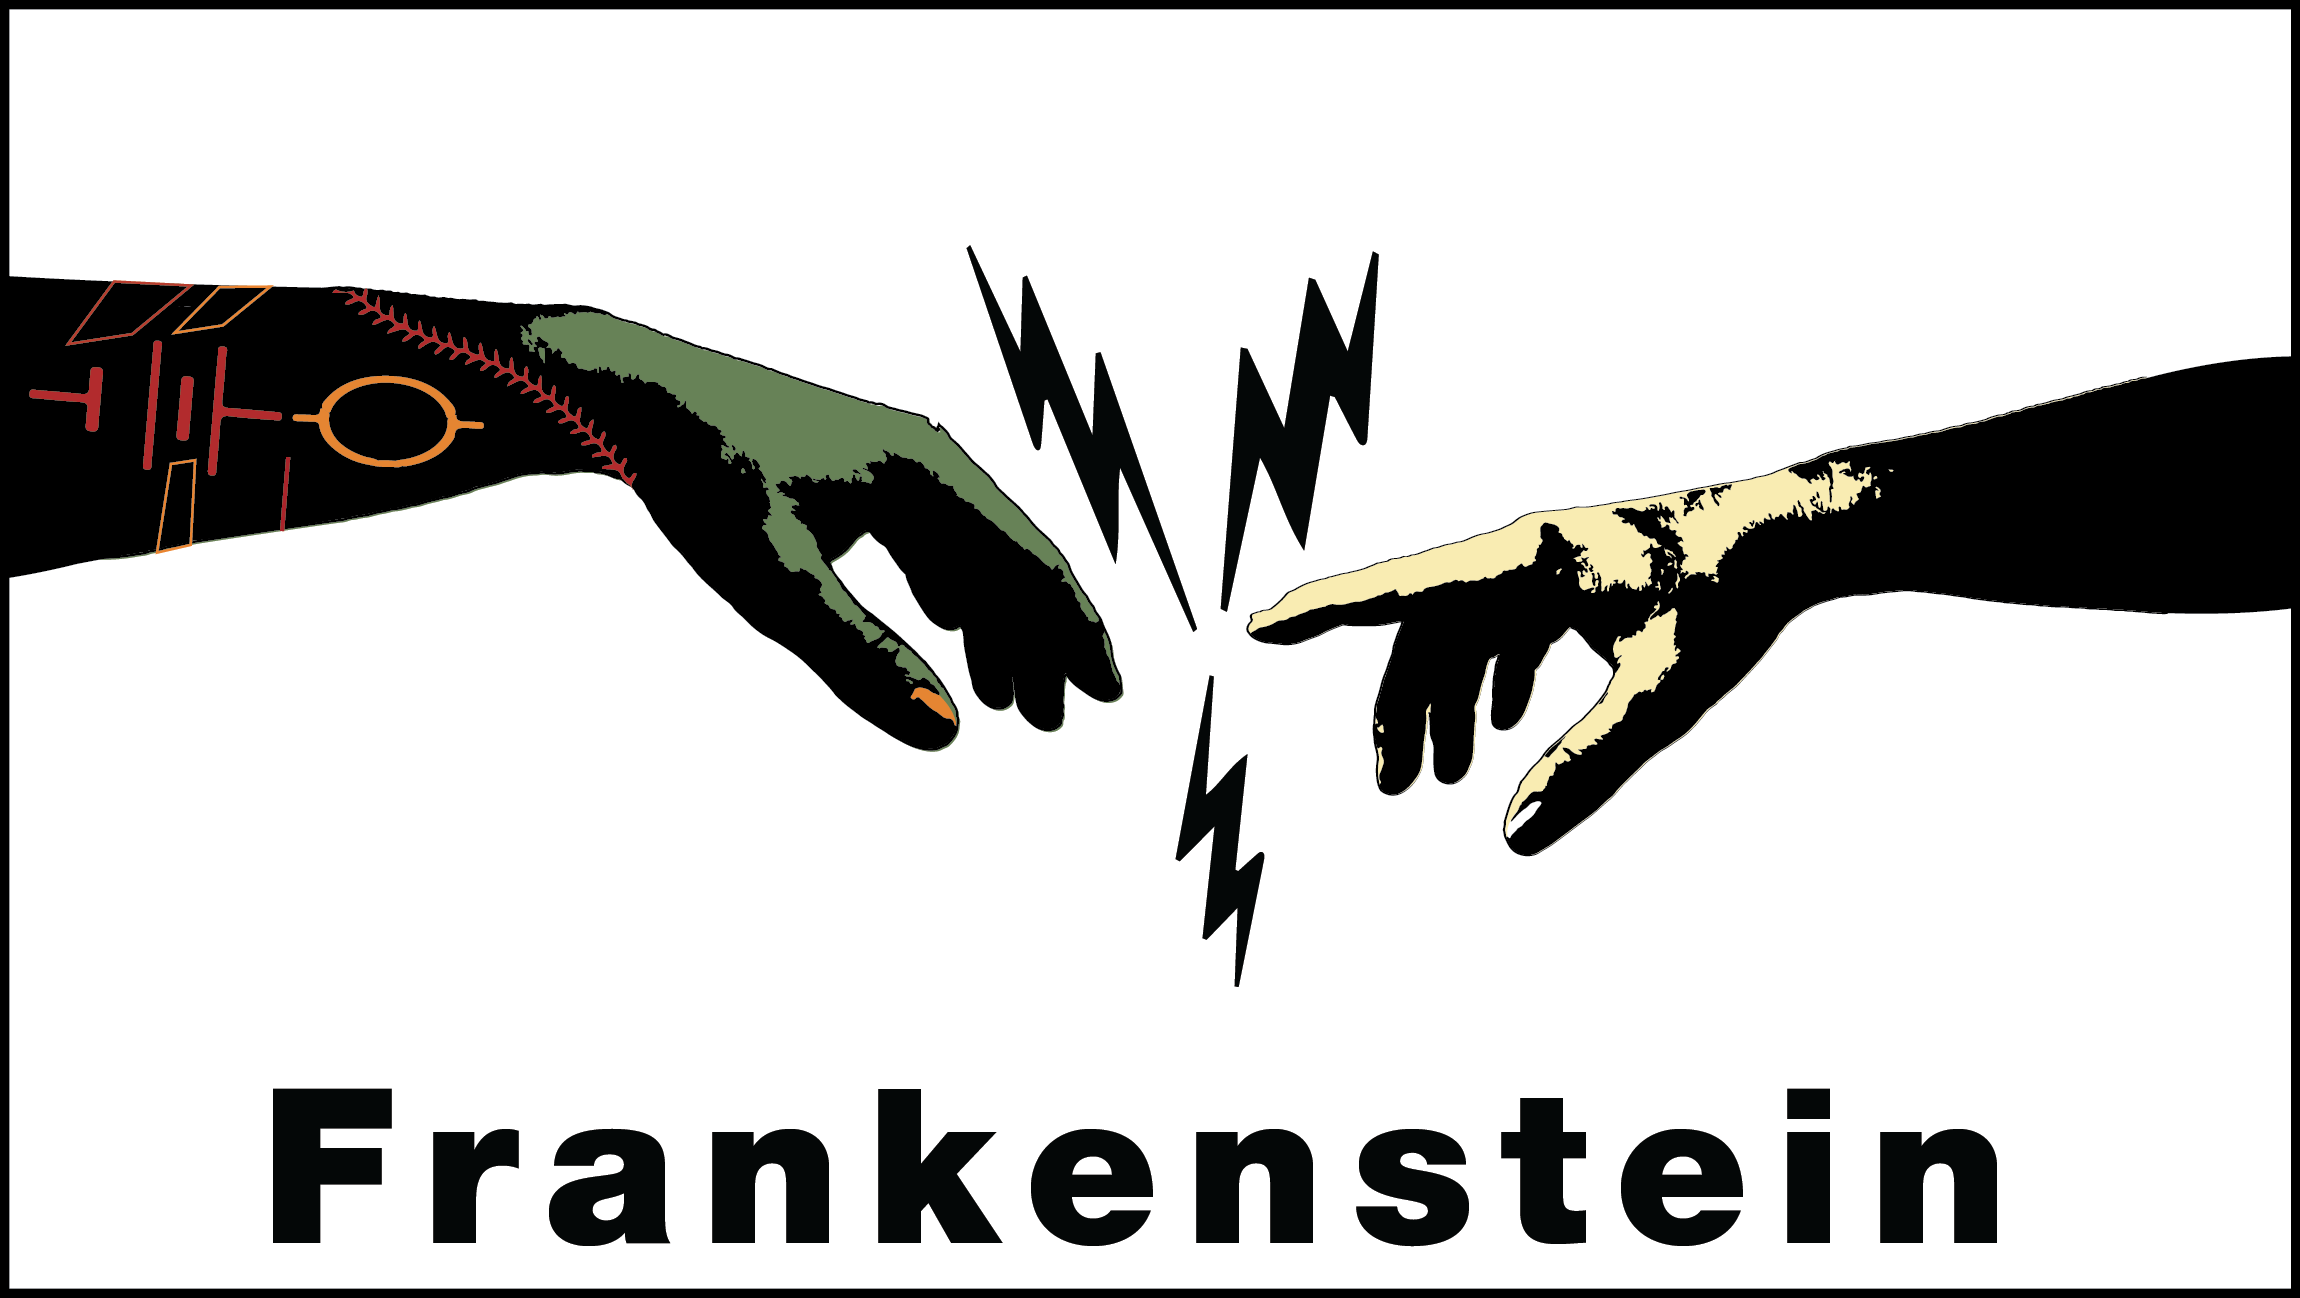 Frankenstein graphic